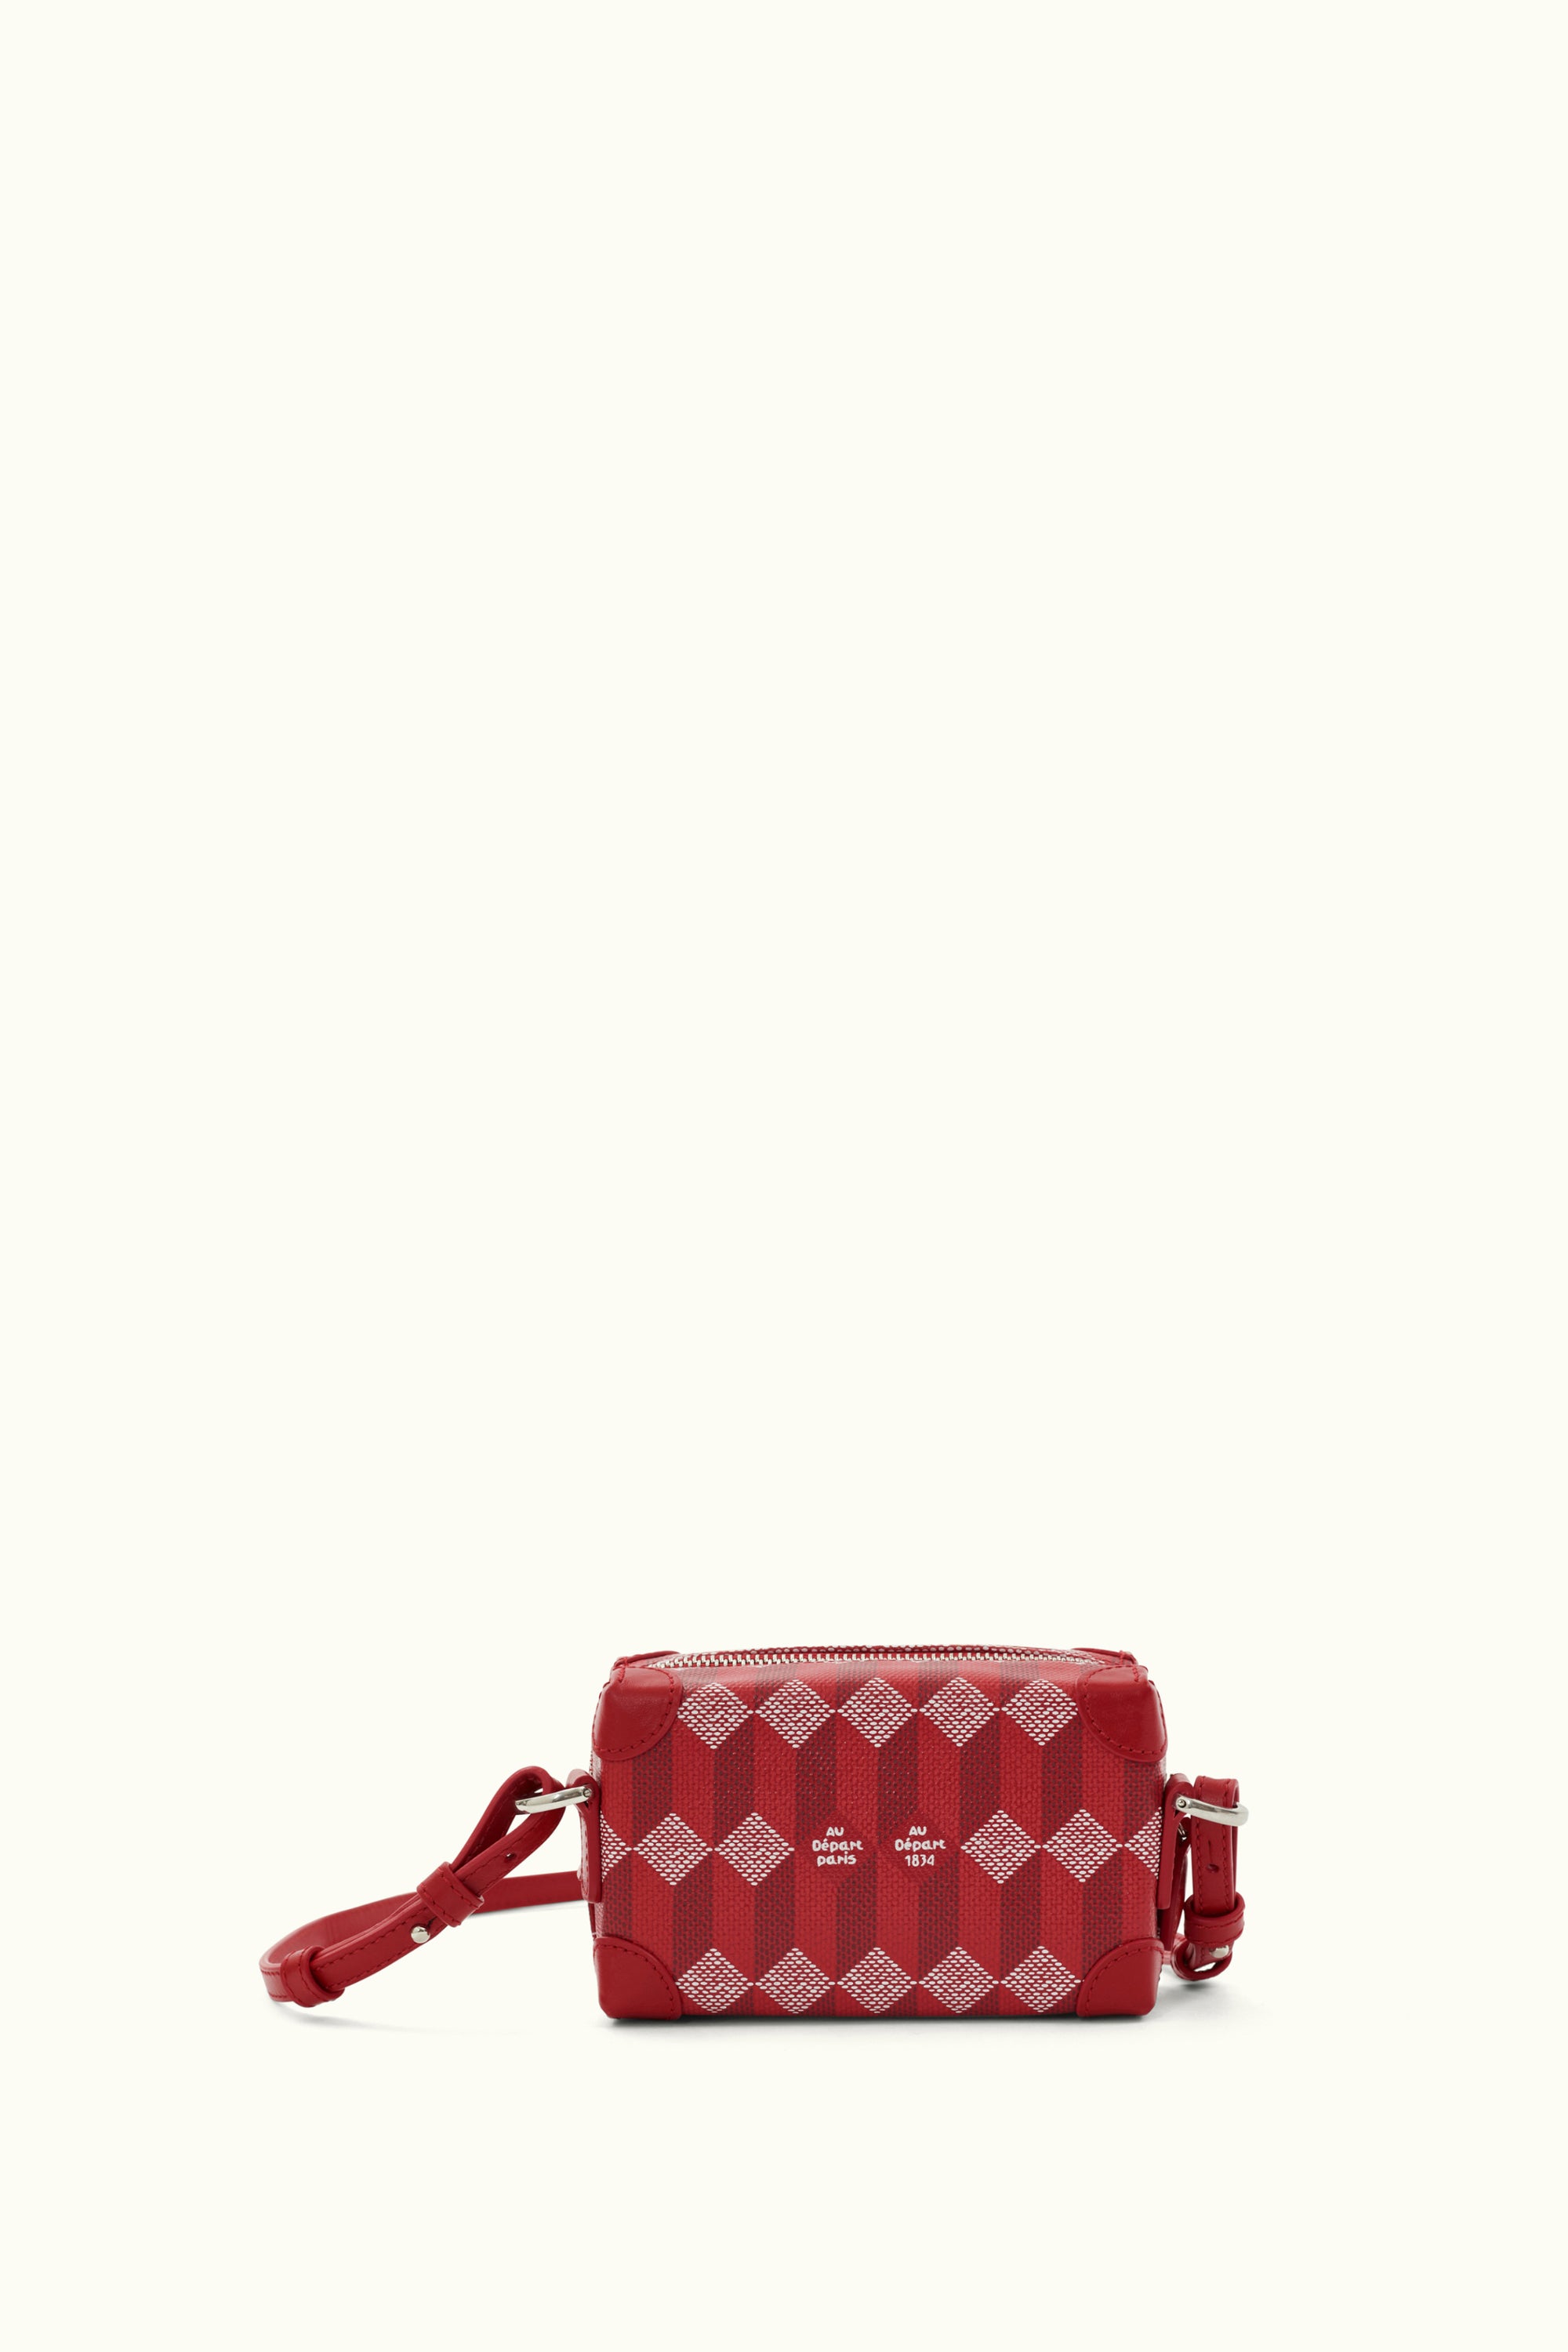 Louis+Vuitton+No%C3%A9+Shoulder+Bag+Brown+Canvas for sale online